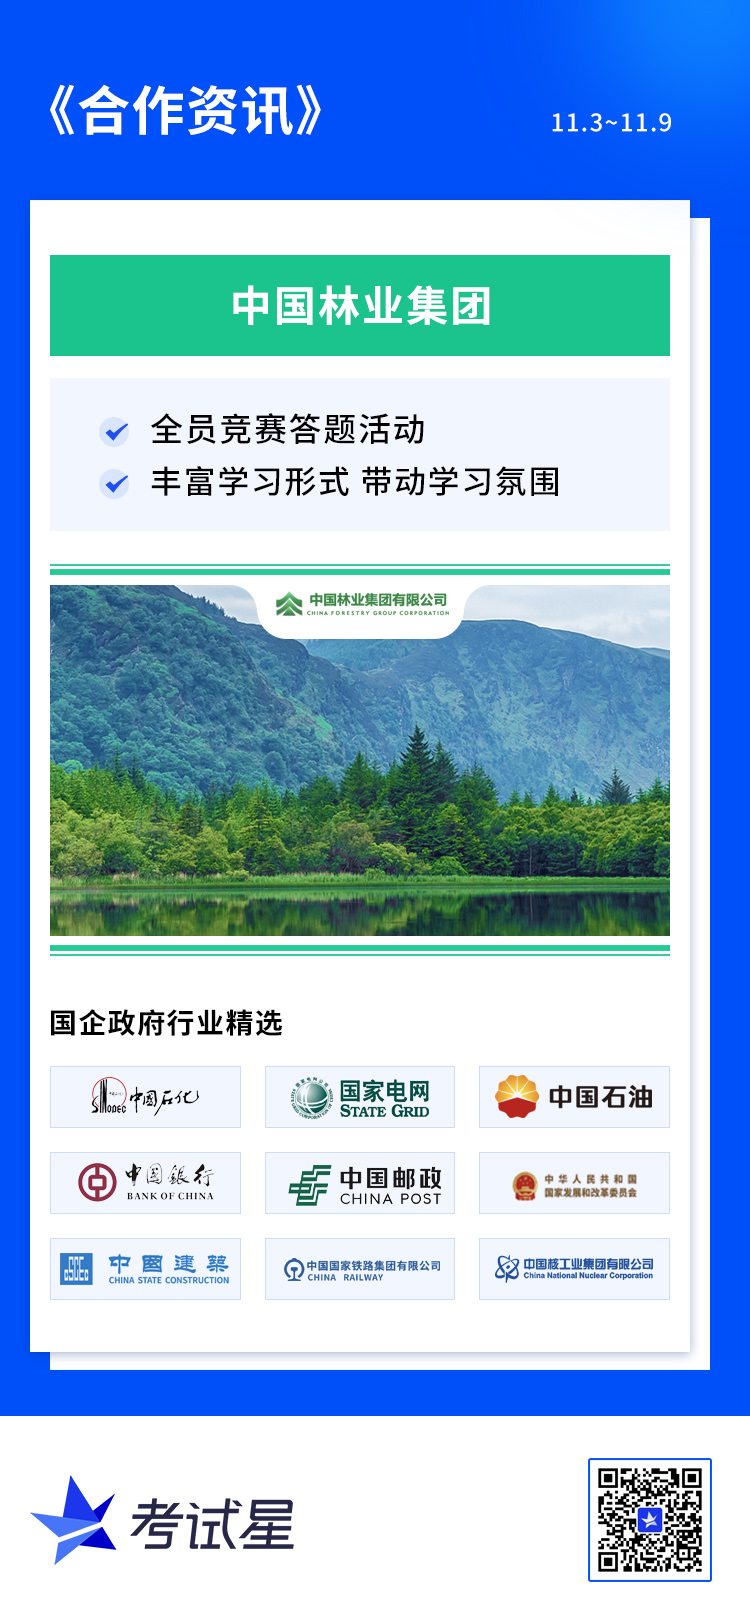 中国林业集团-竞赛答题系统